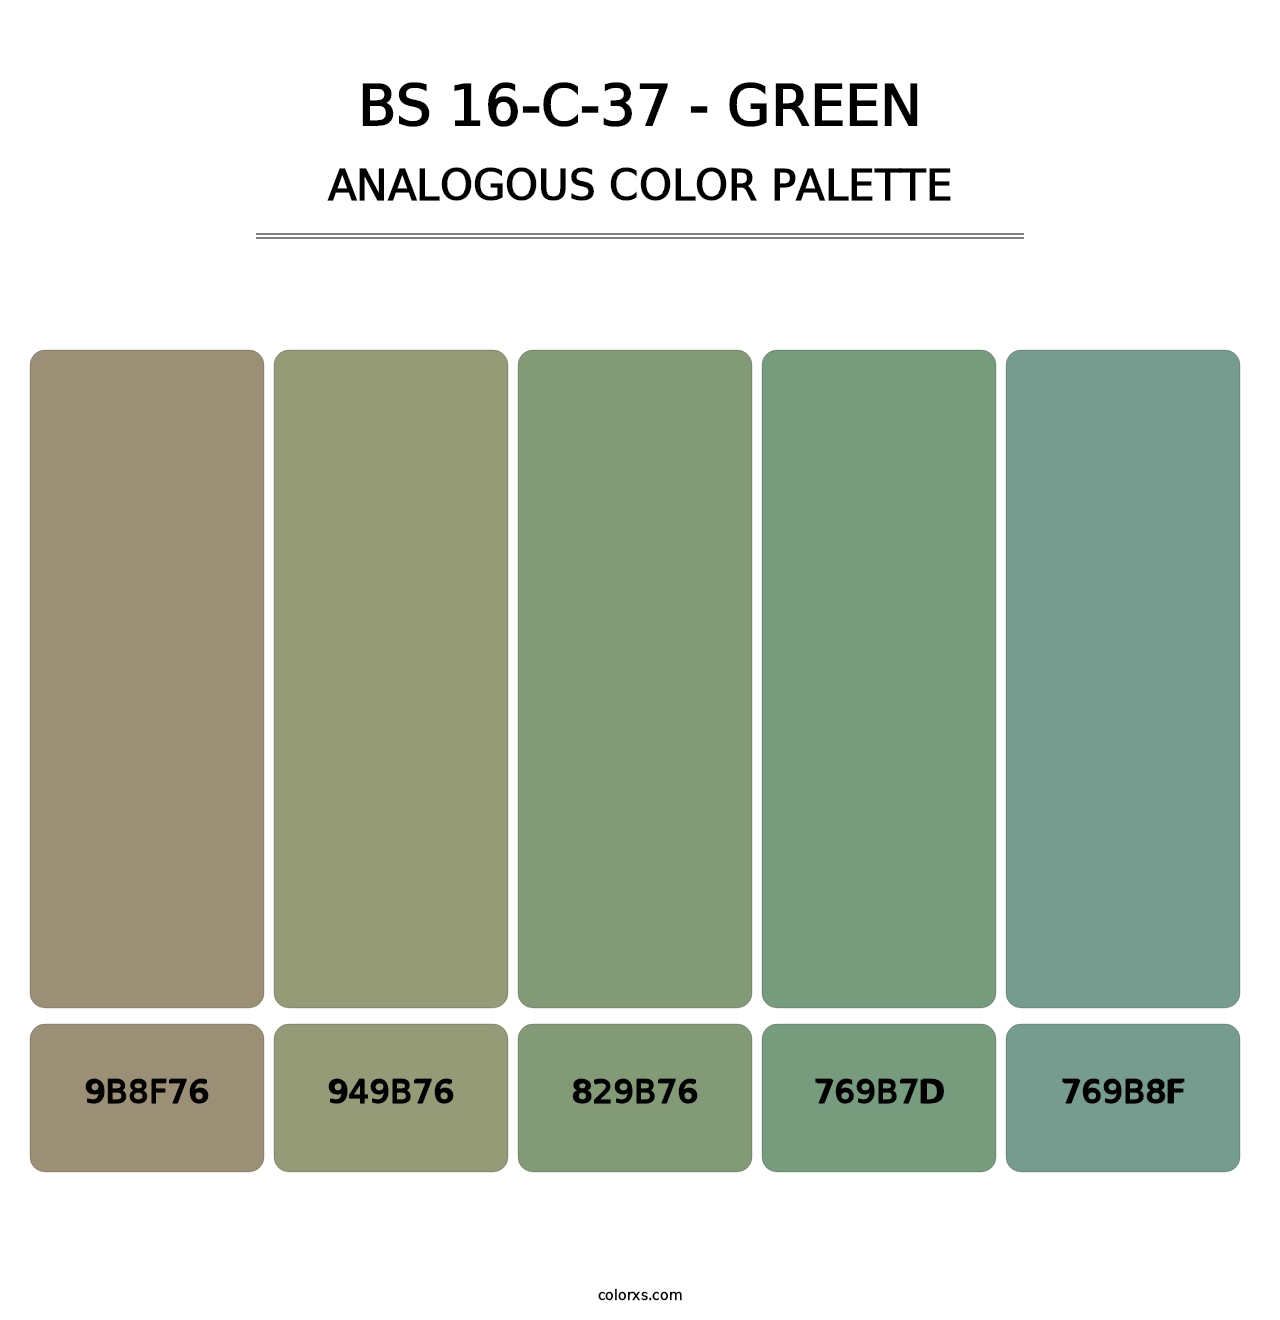 BS 16-C-37 - Green - Analogous Color Palette